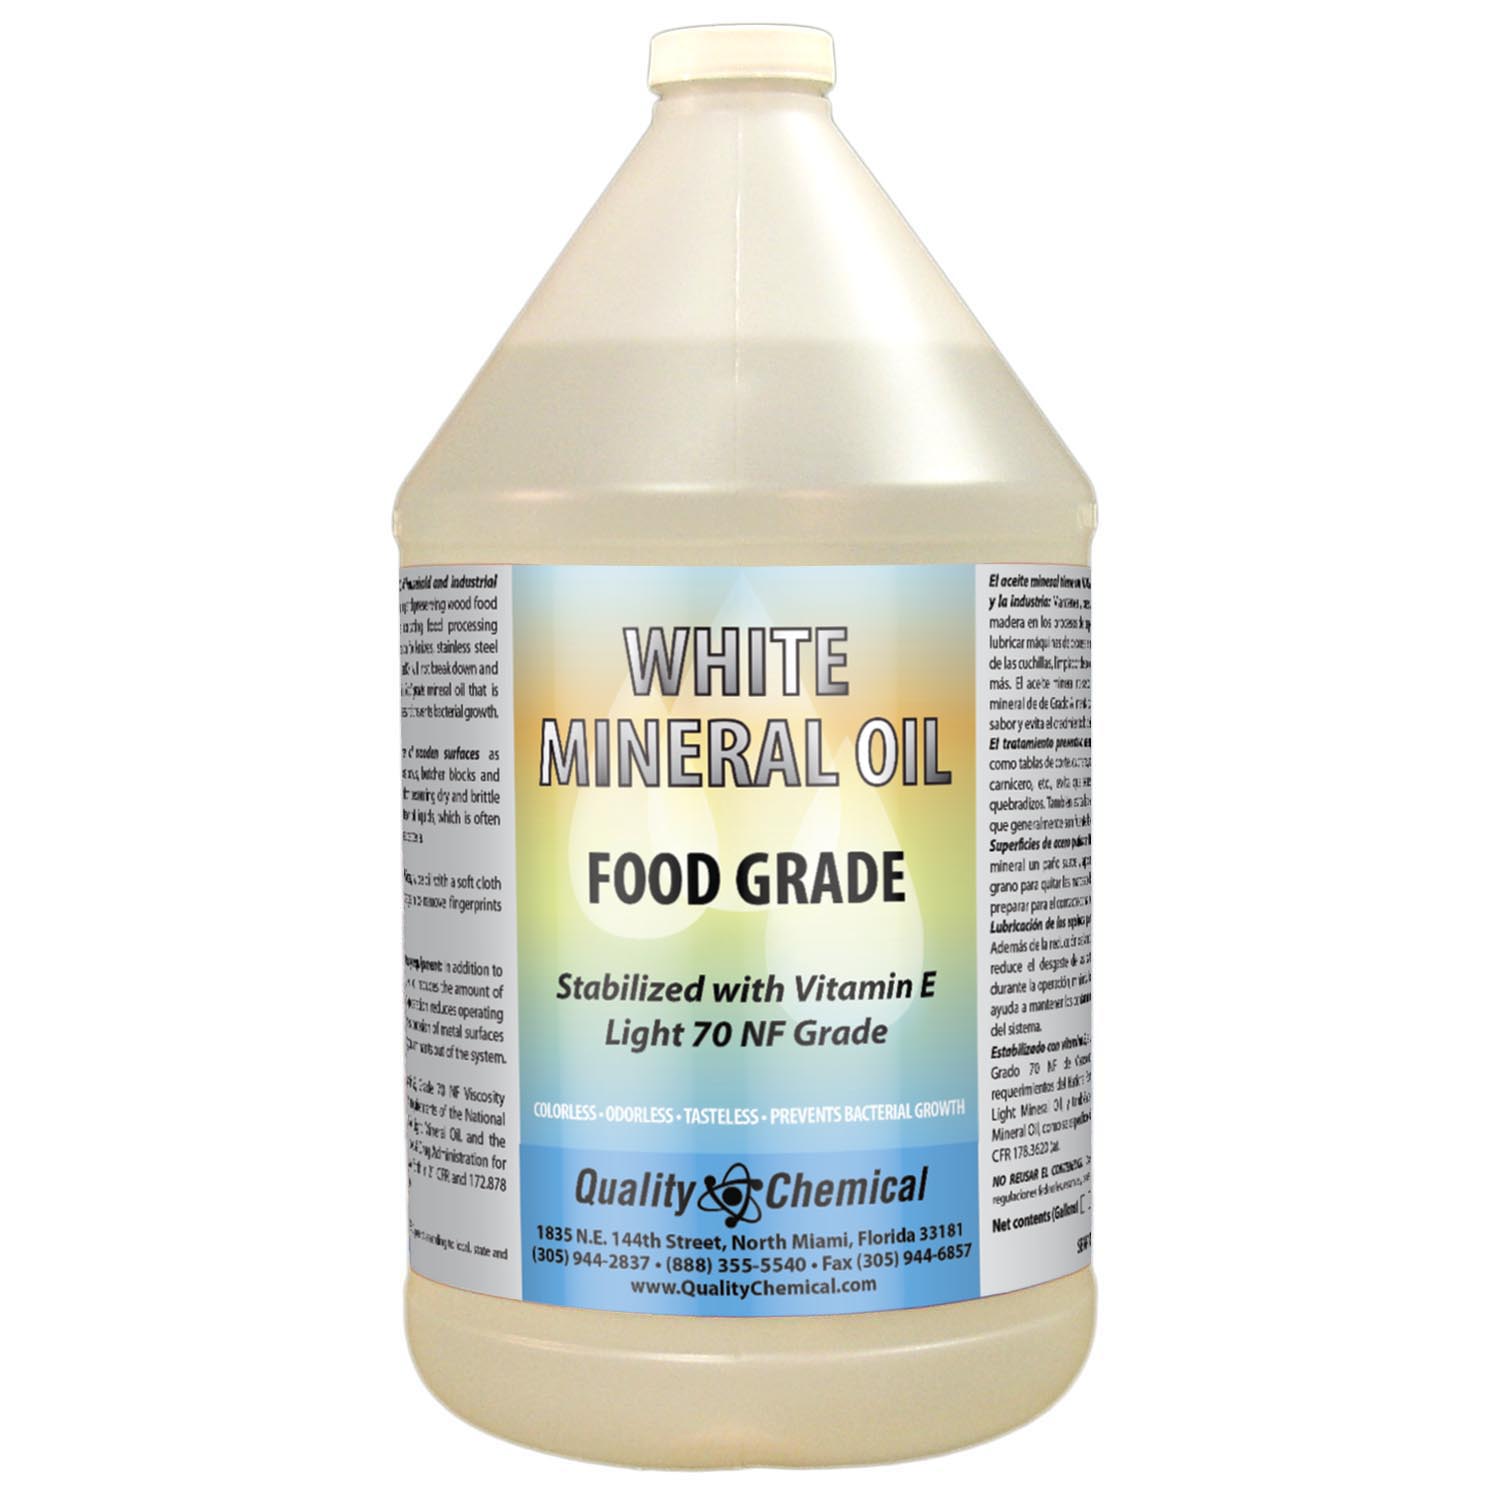 Mineral Oil Food Grade, Light NF Grade